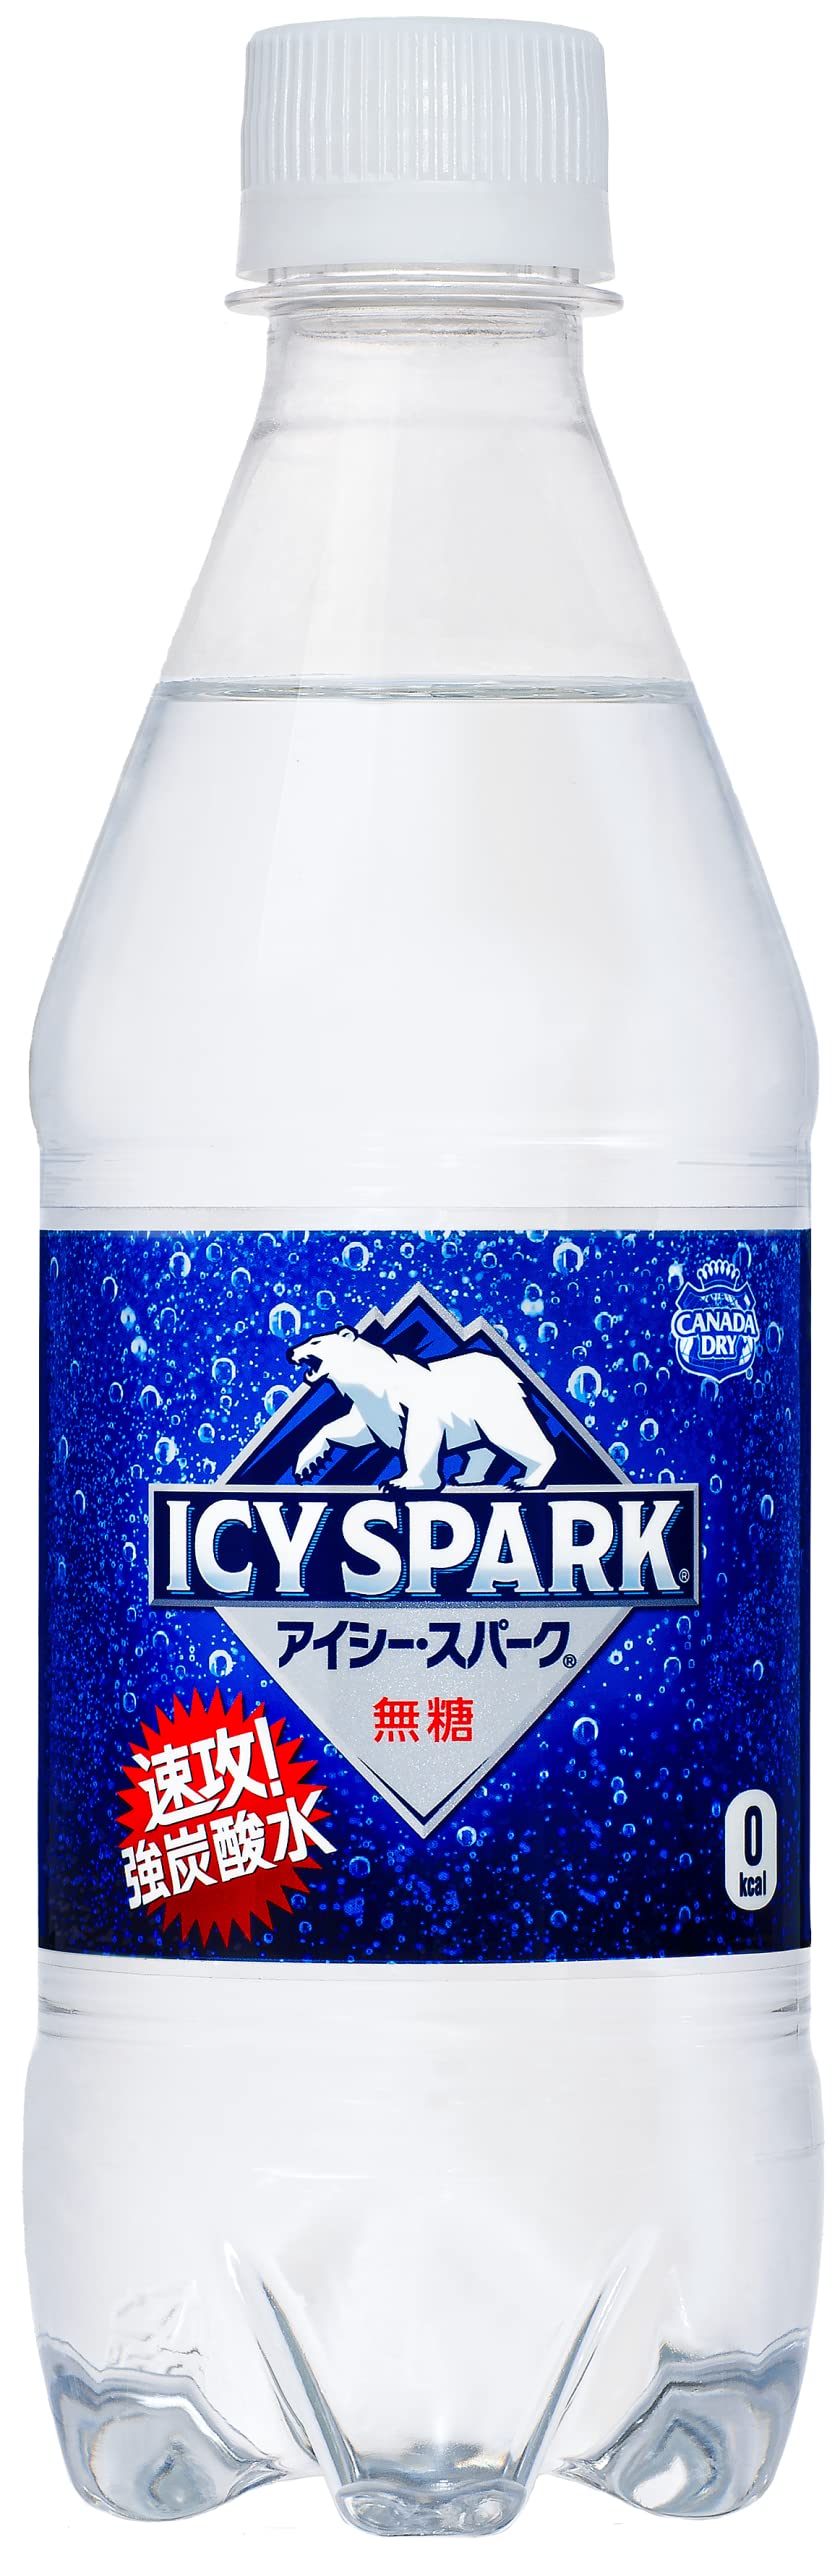 アイシー・スパーク ICY SPARK from カナダドライ ラベルレス カナダドライレモン 430ml*48本セット PET 炭酸水 - 通販 -  zlote-arkady.pl